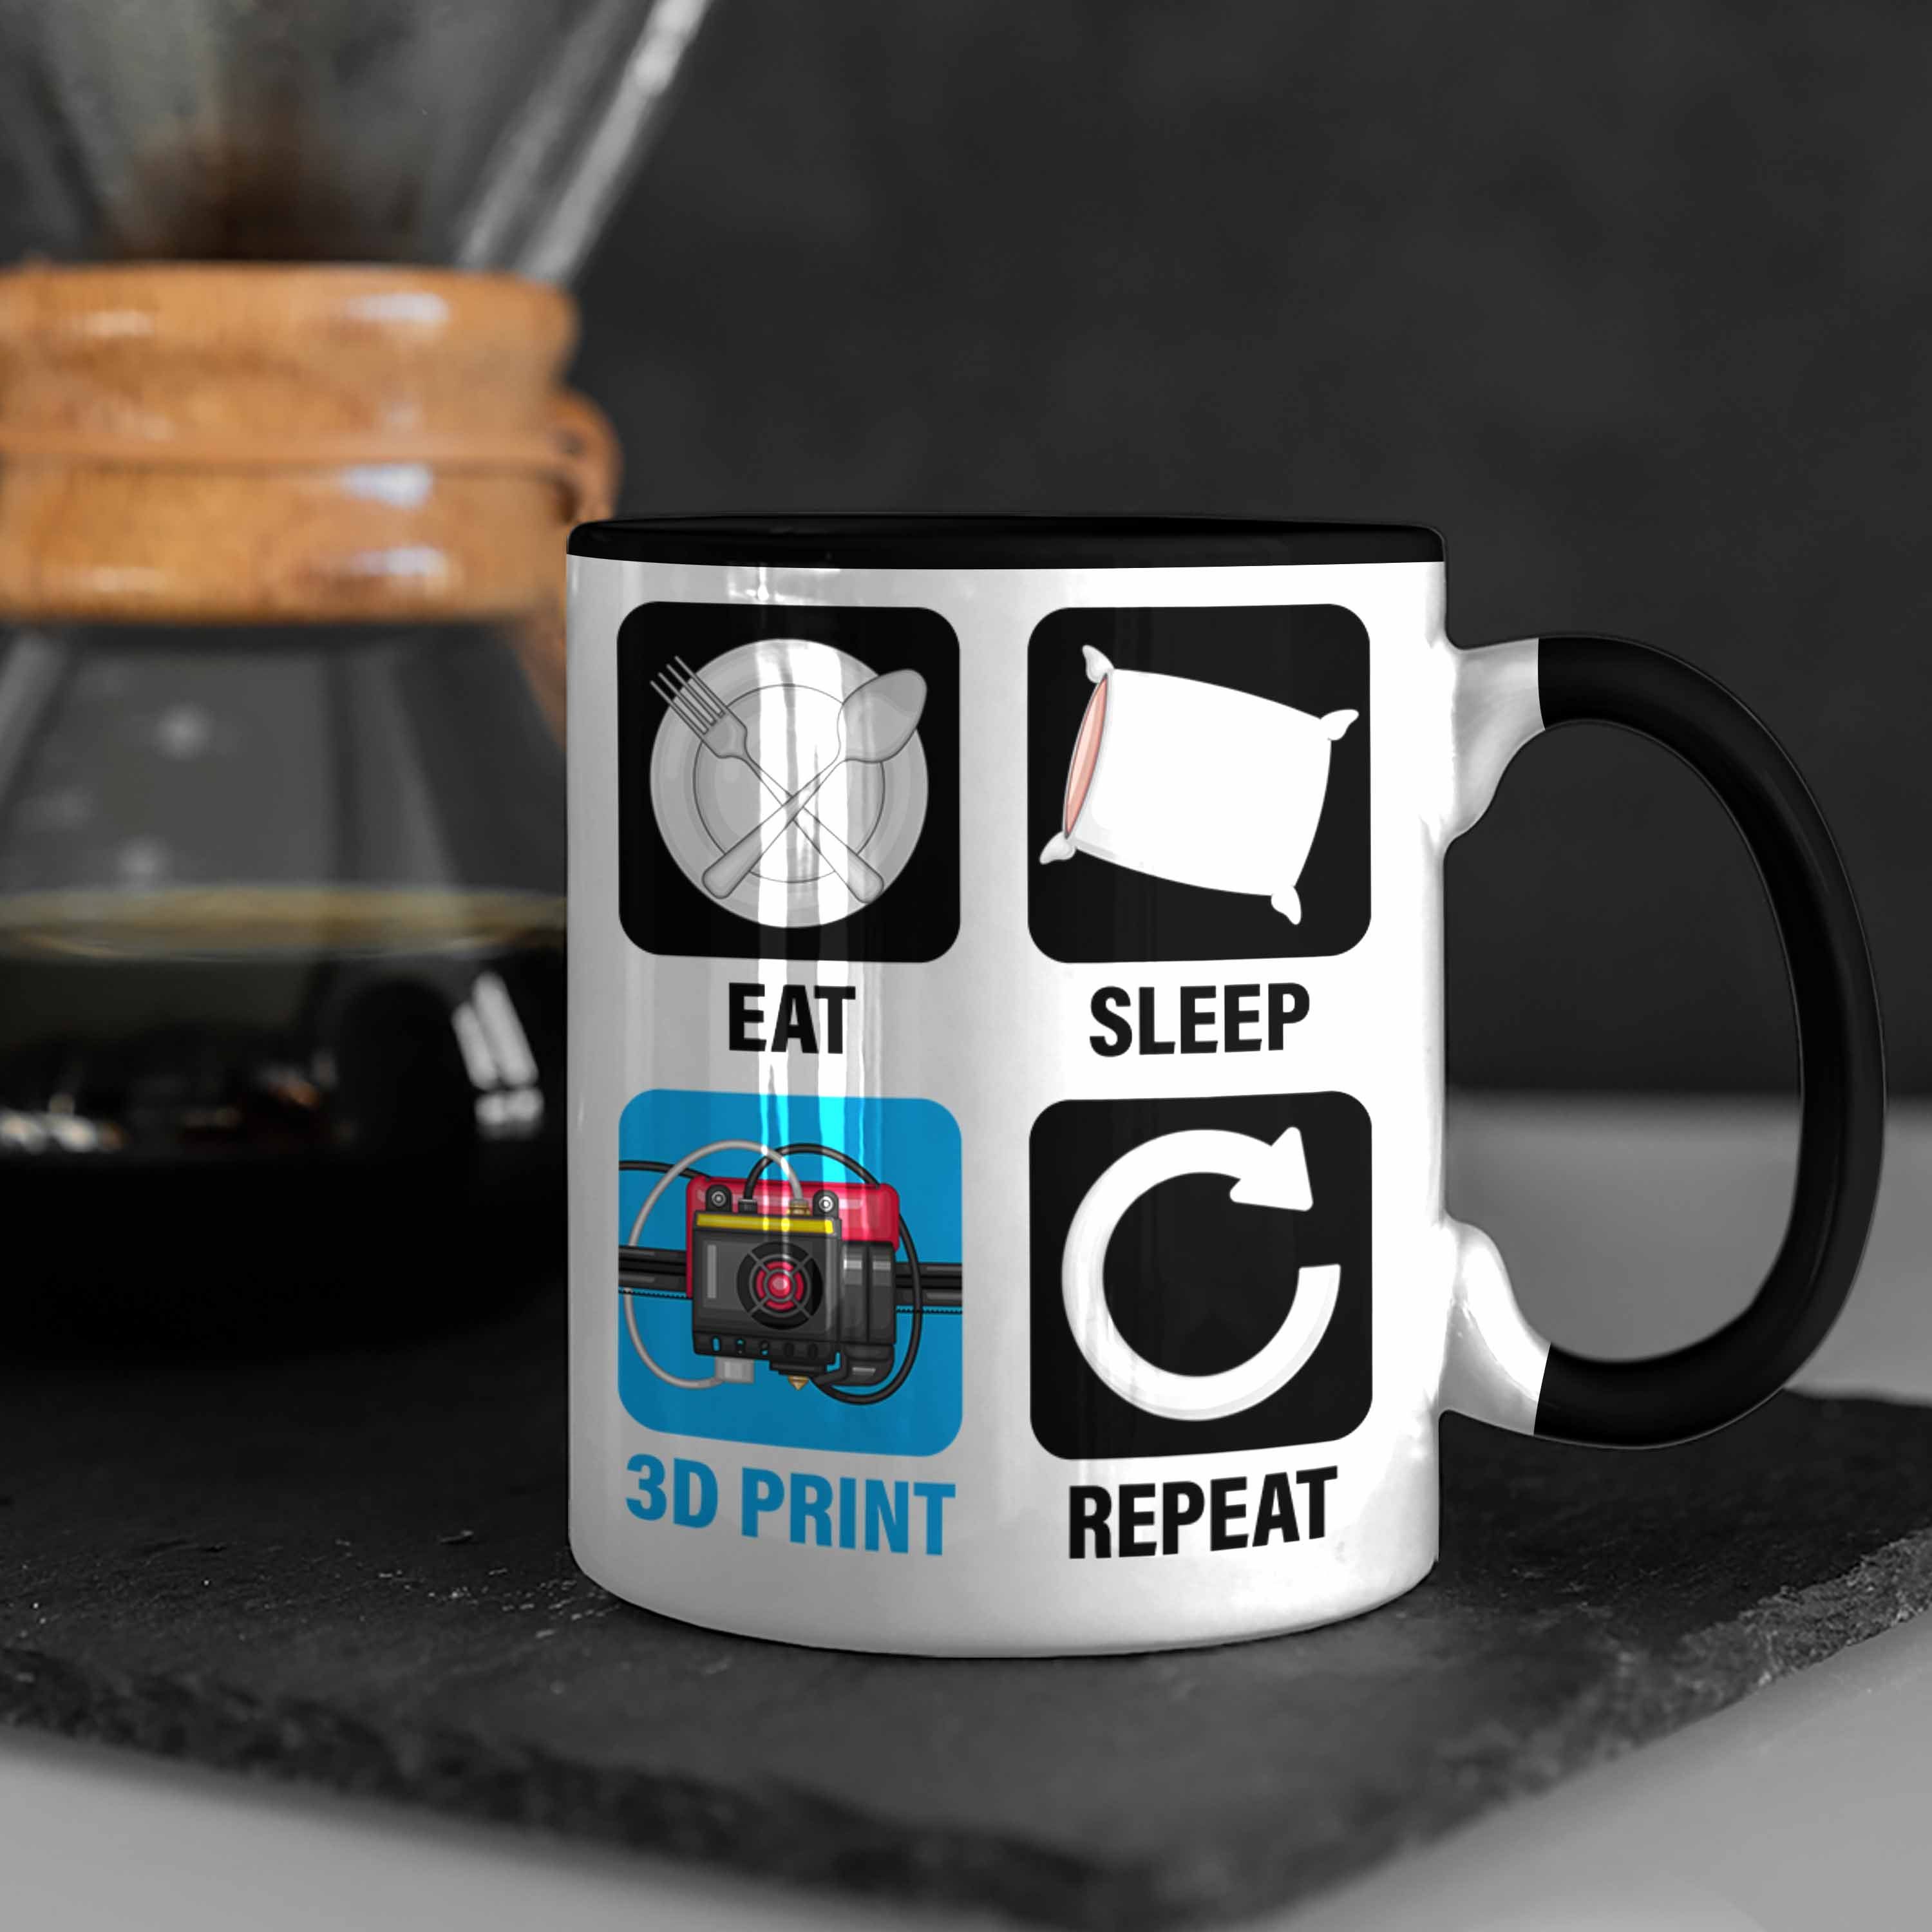 3D Print 3D Geschenk Repeat 3D Eat Tasse Printing für Trendation Schwarz Drucker Tasse Mä Sleep